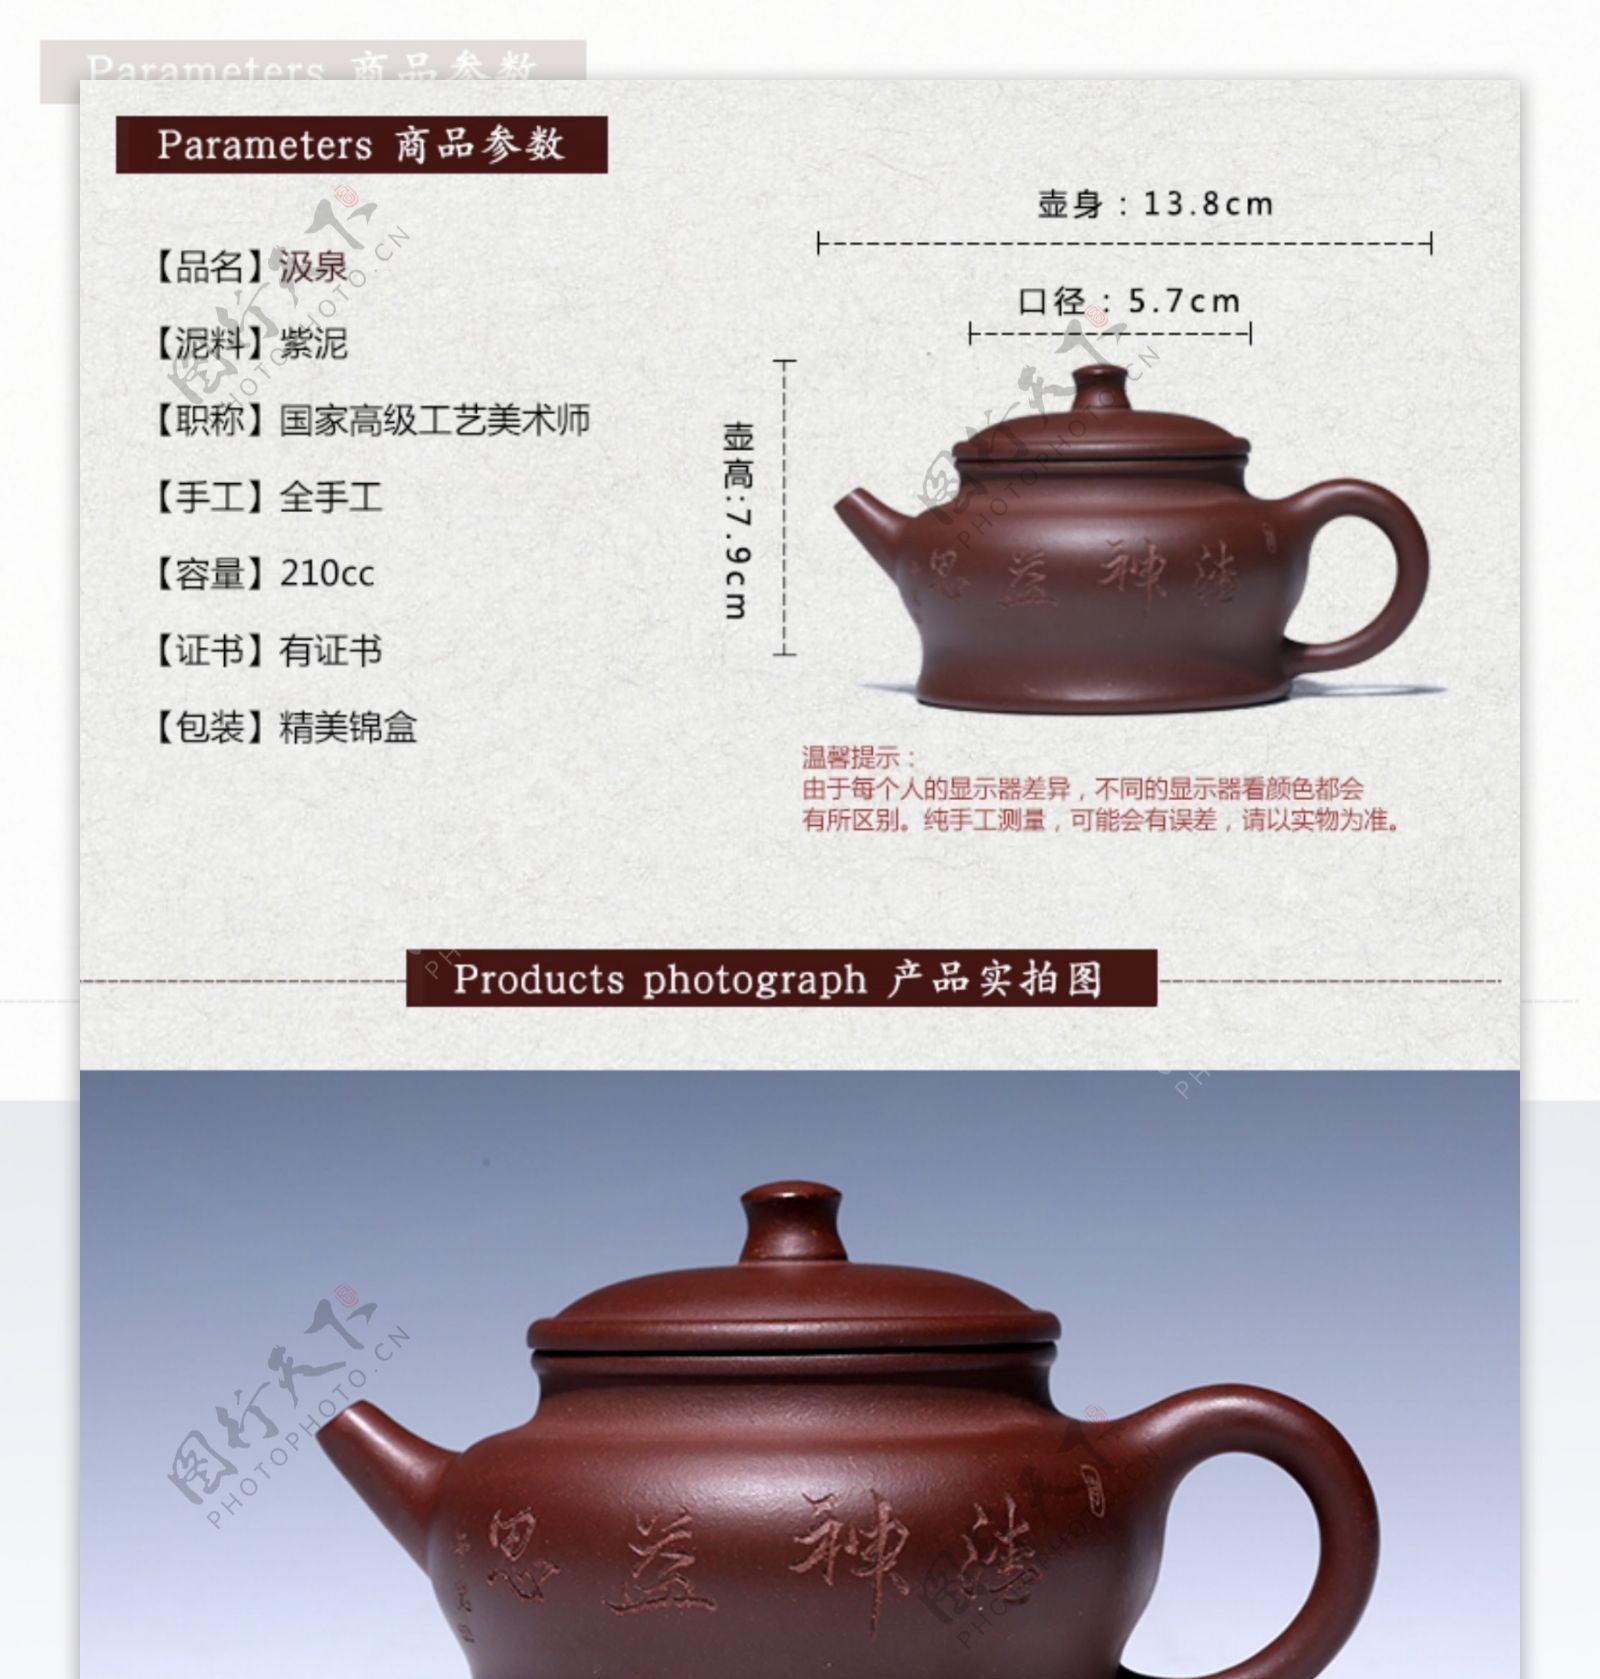 茶壶详情页